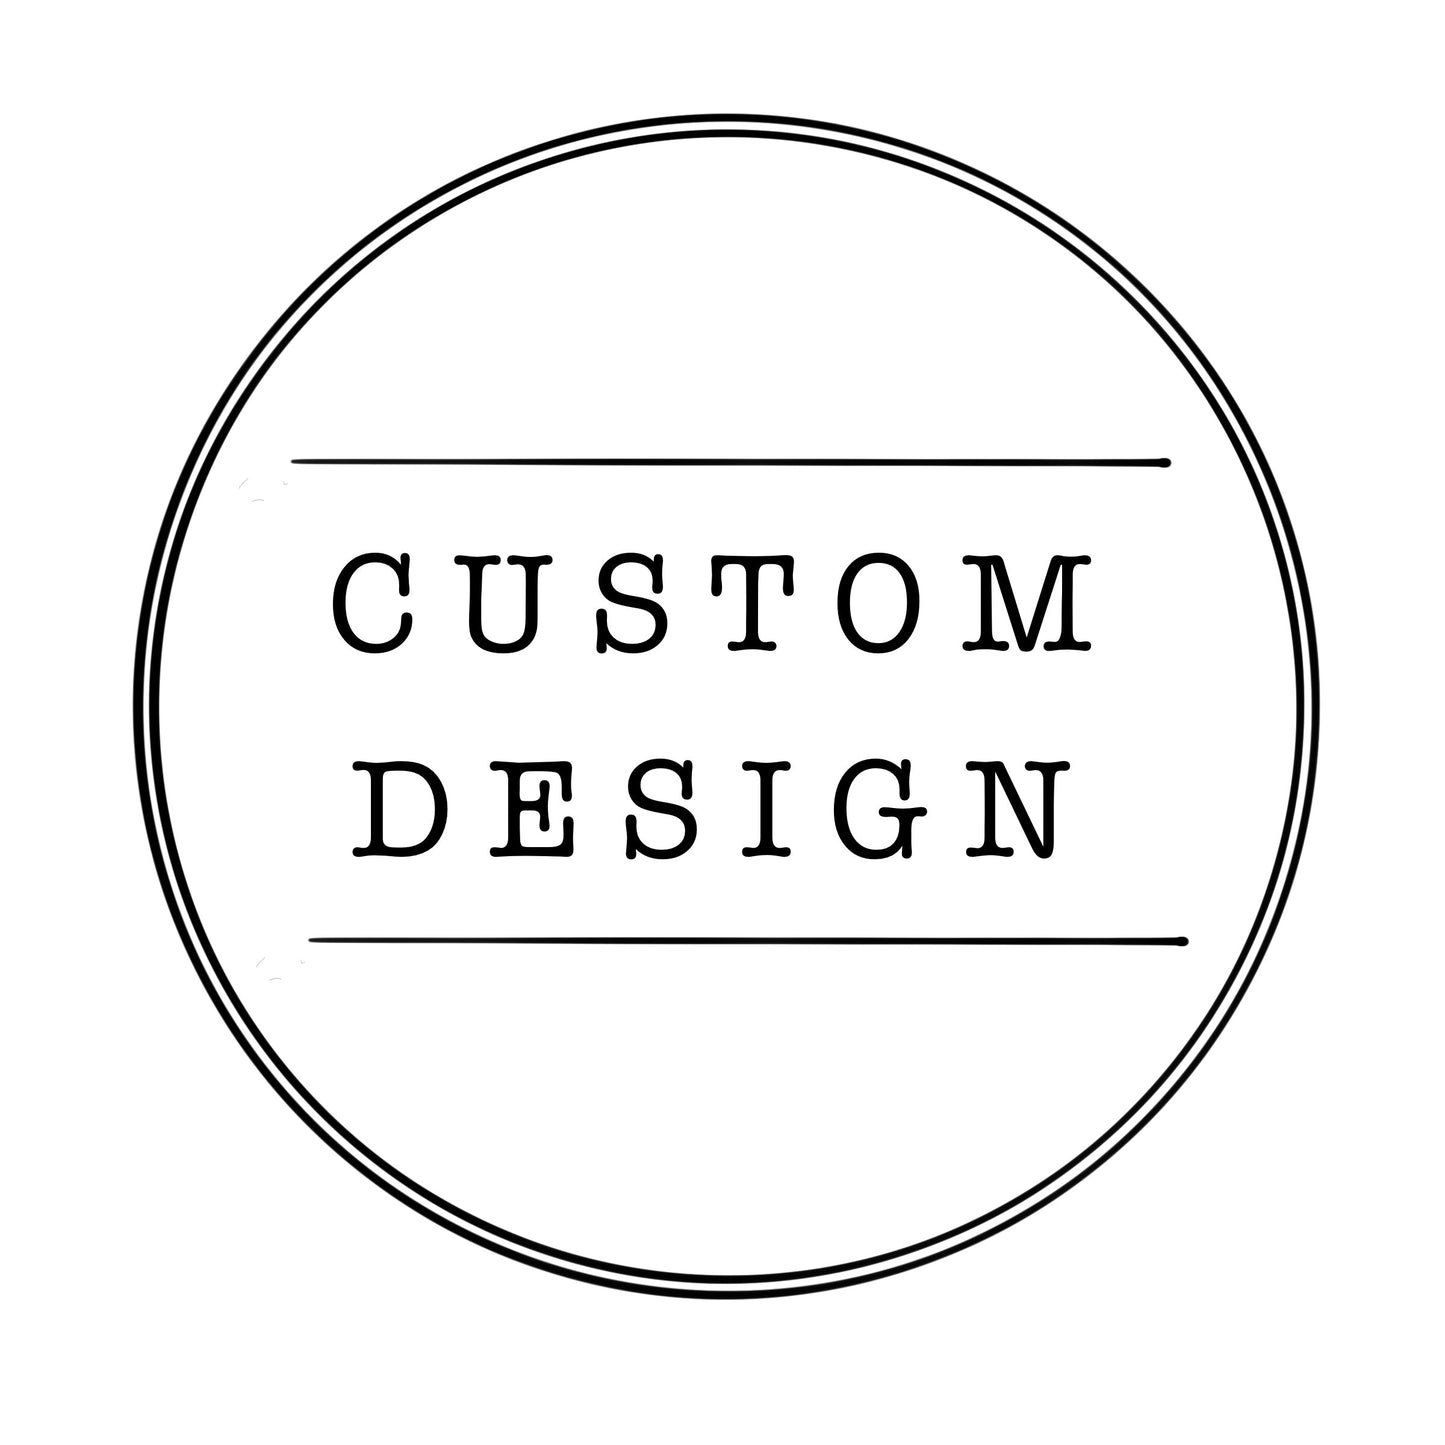 Custom Design for Matthew